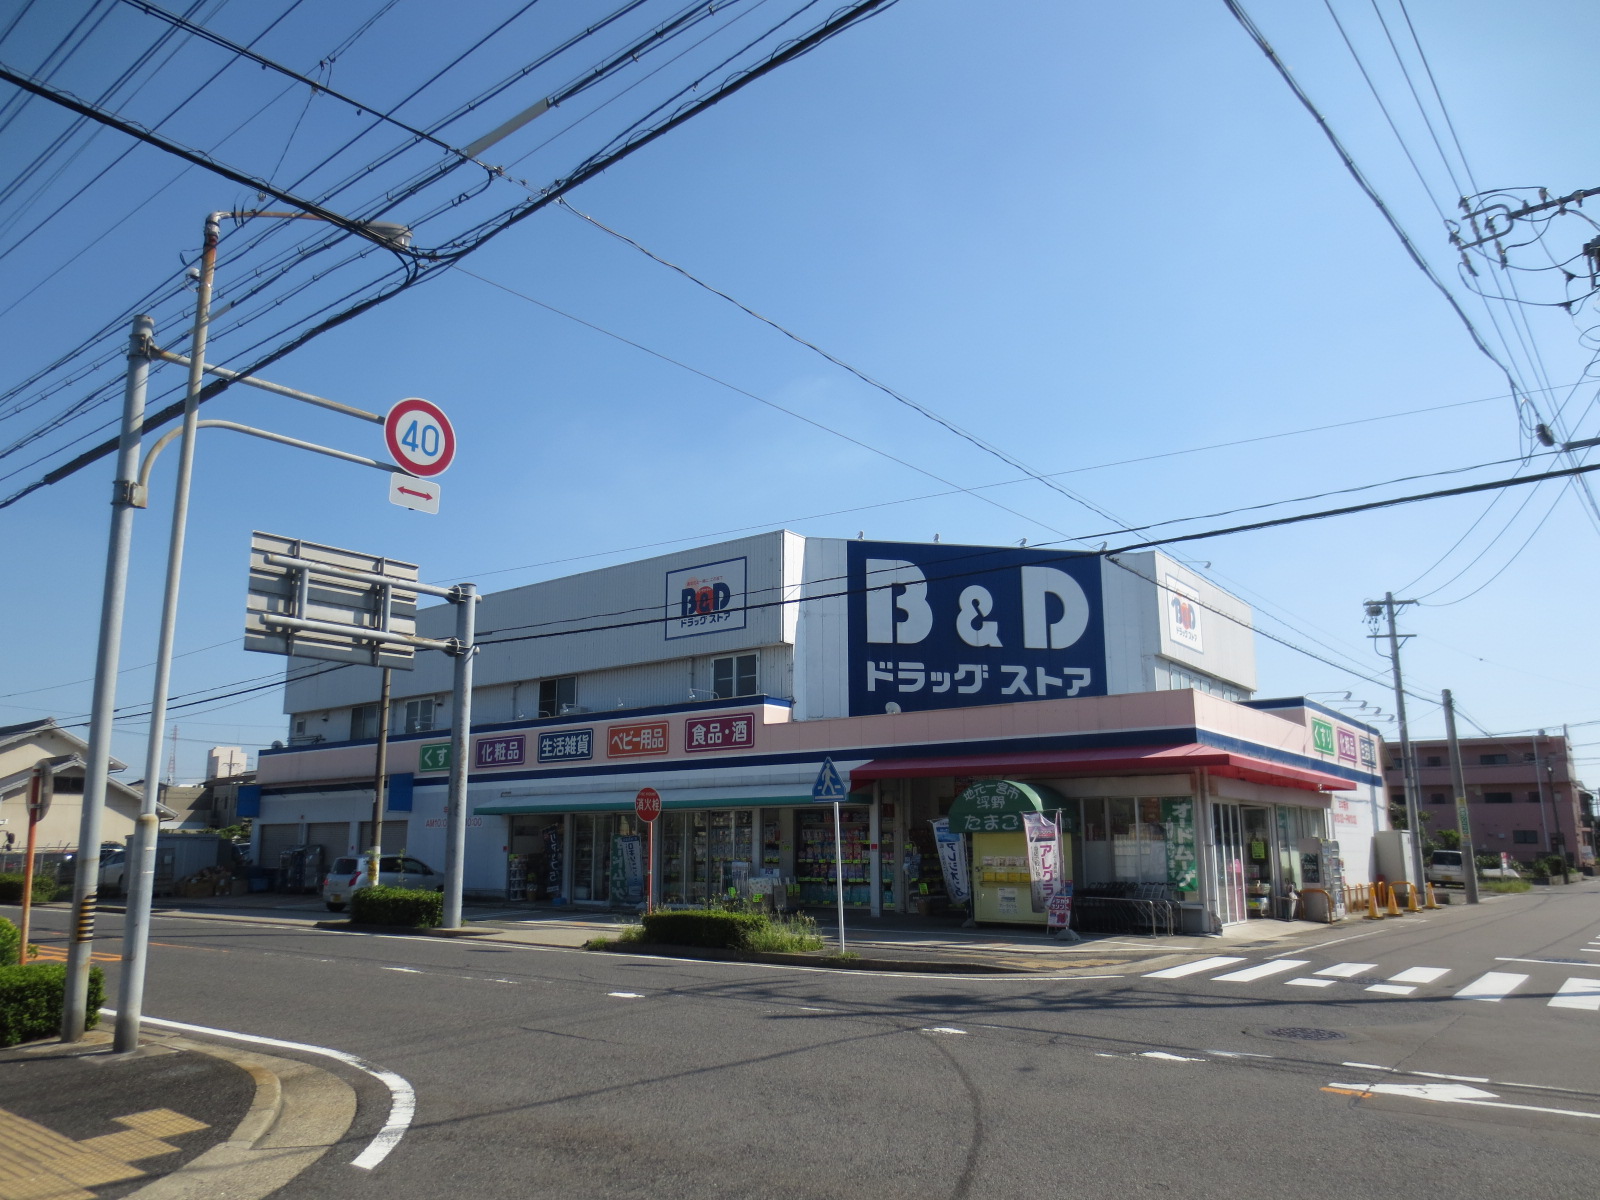 Dorakkusutoa. B & D drugstore Nakaotai shop 386m until (drugstore)